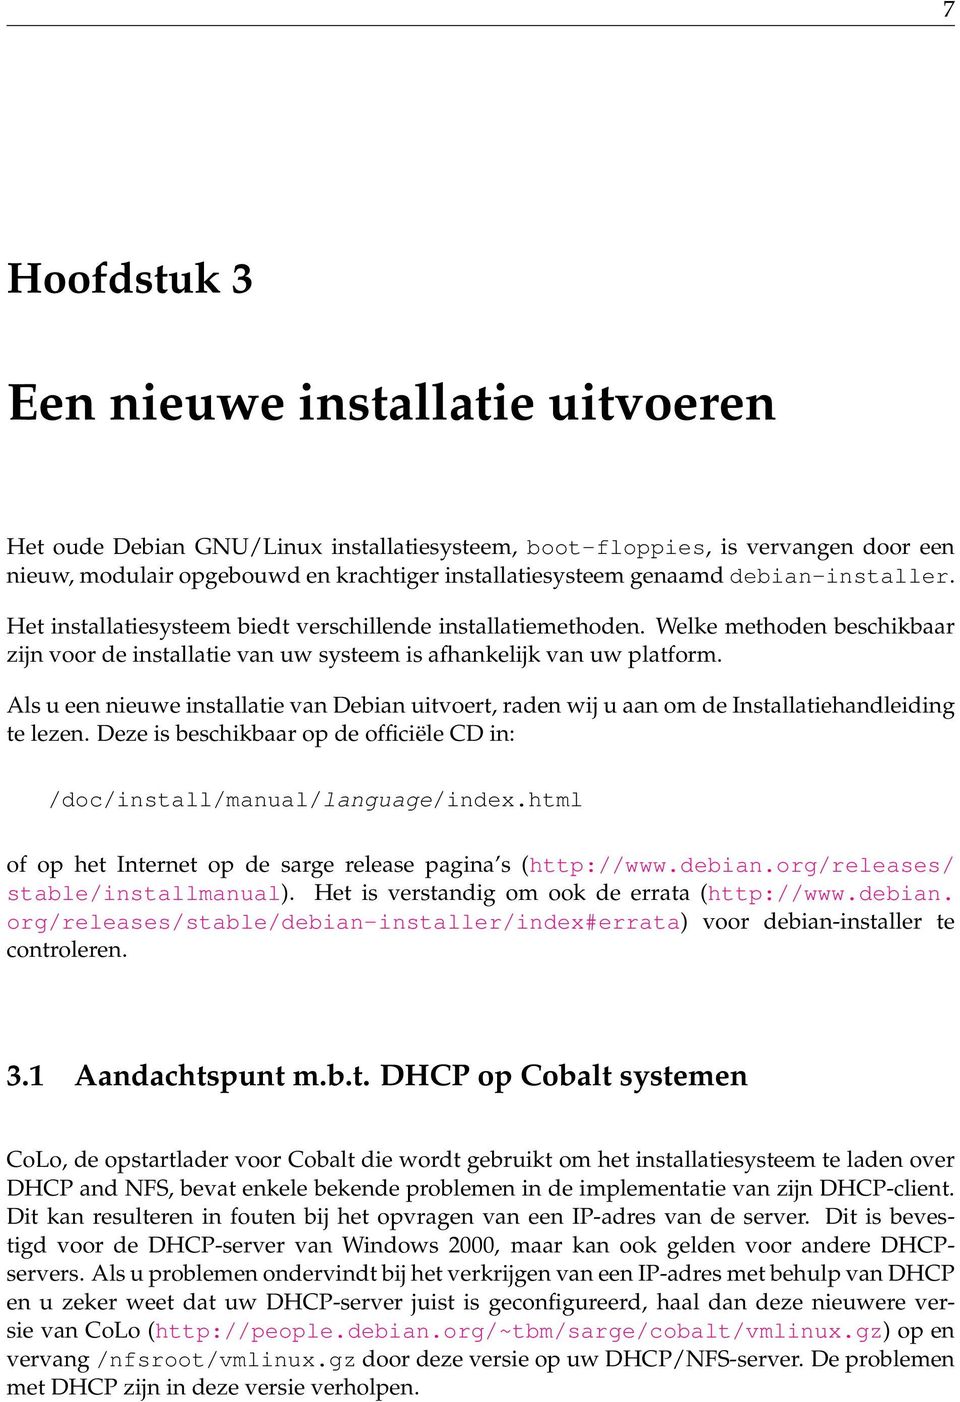 Als u een nieuwe installatie van Debian uitvoert, raden wij u aan om de Installatiehandleiding te lezen. Deze is beschikbaar op de officiële CD in: /doc/install/manual/language/index.